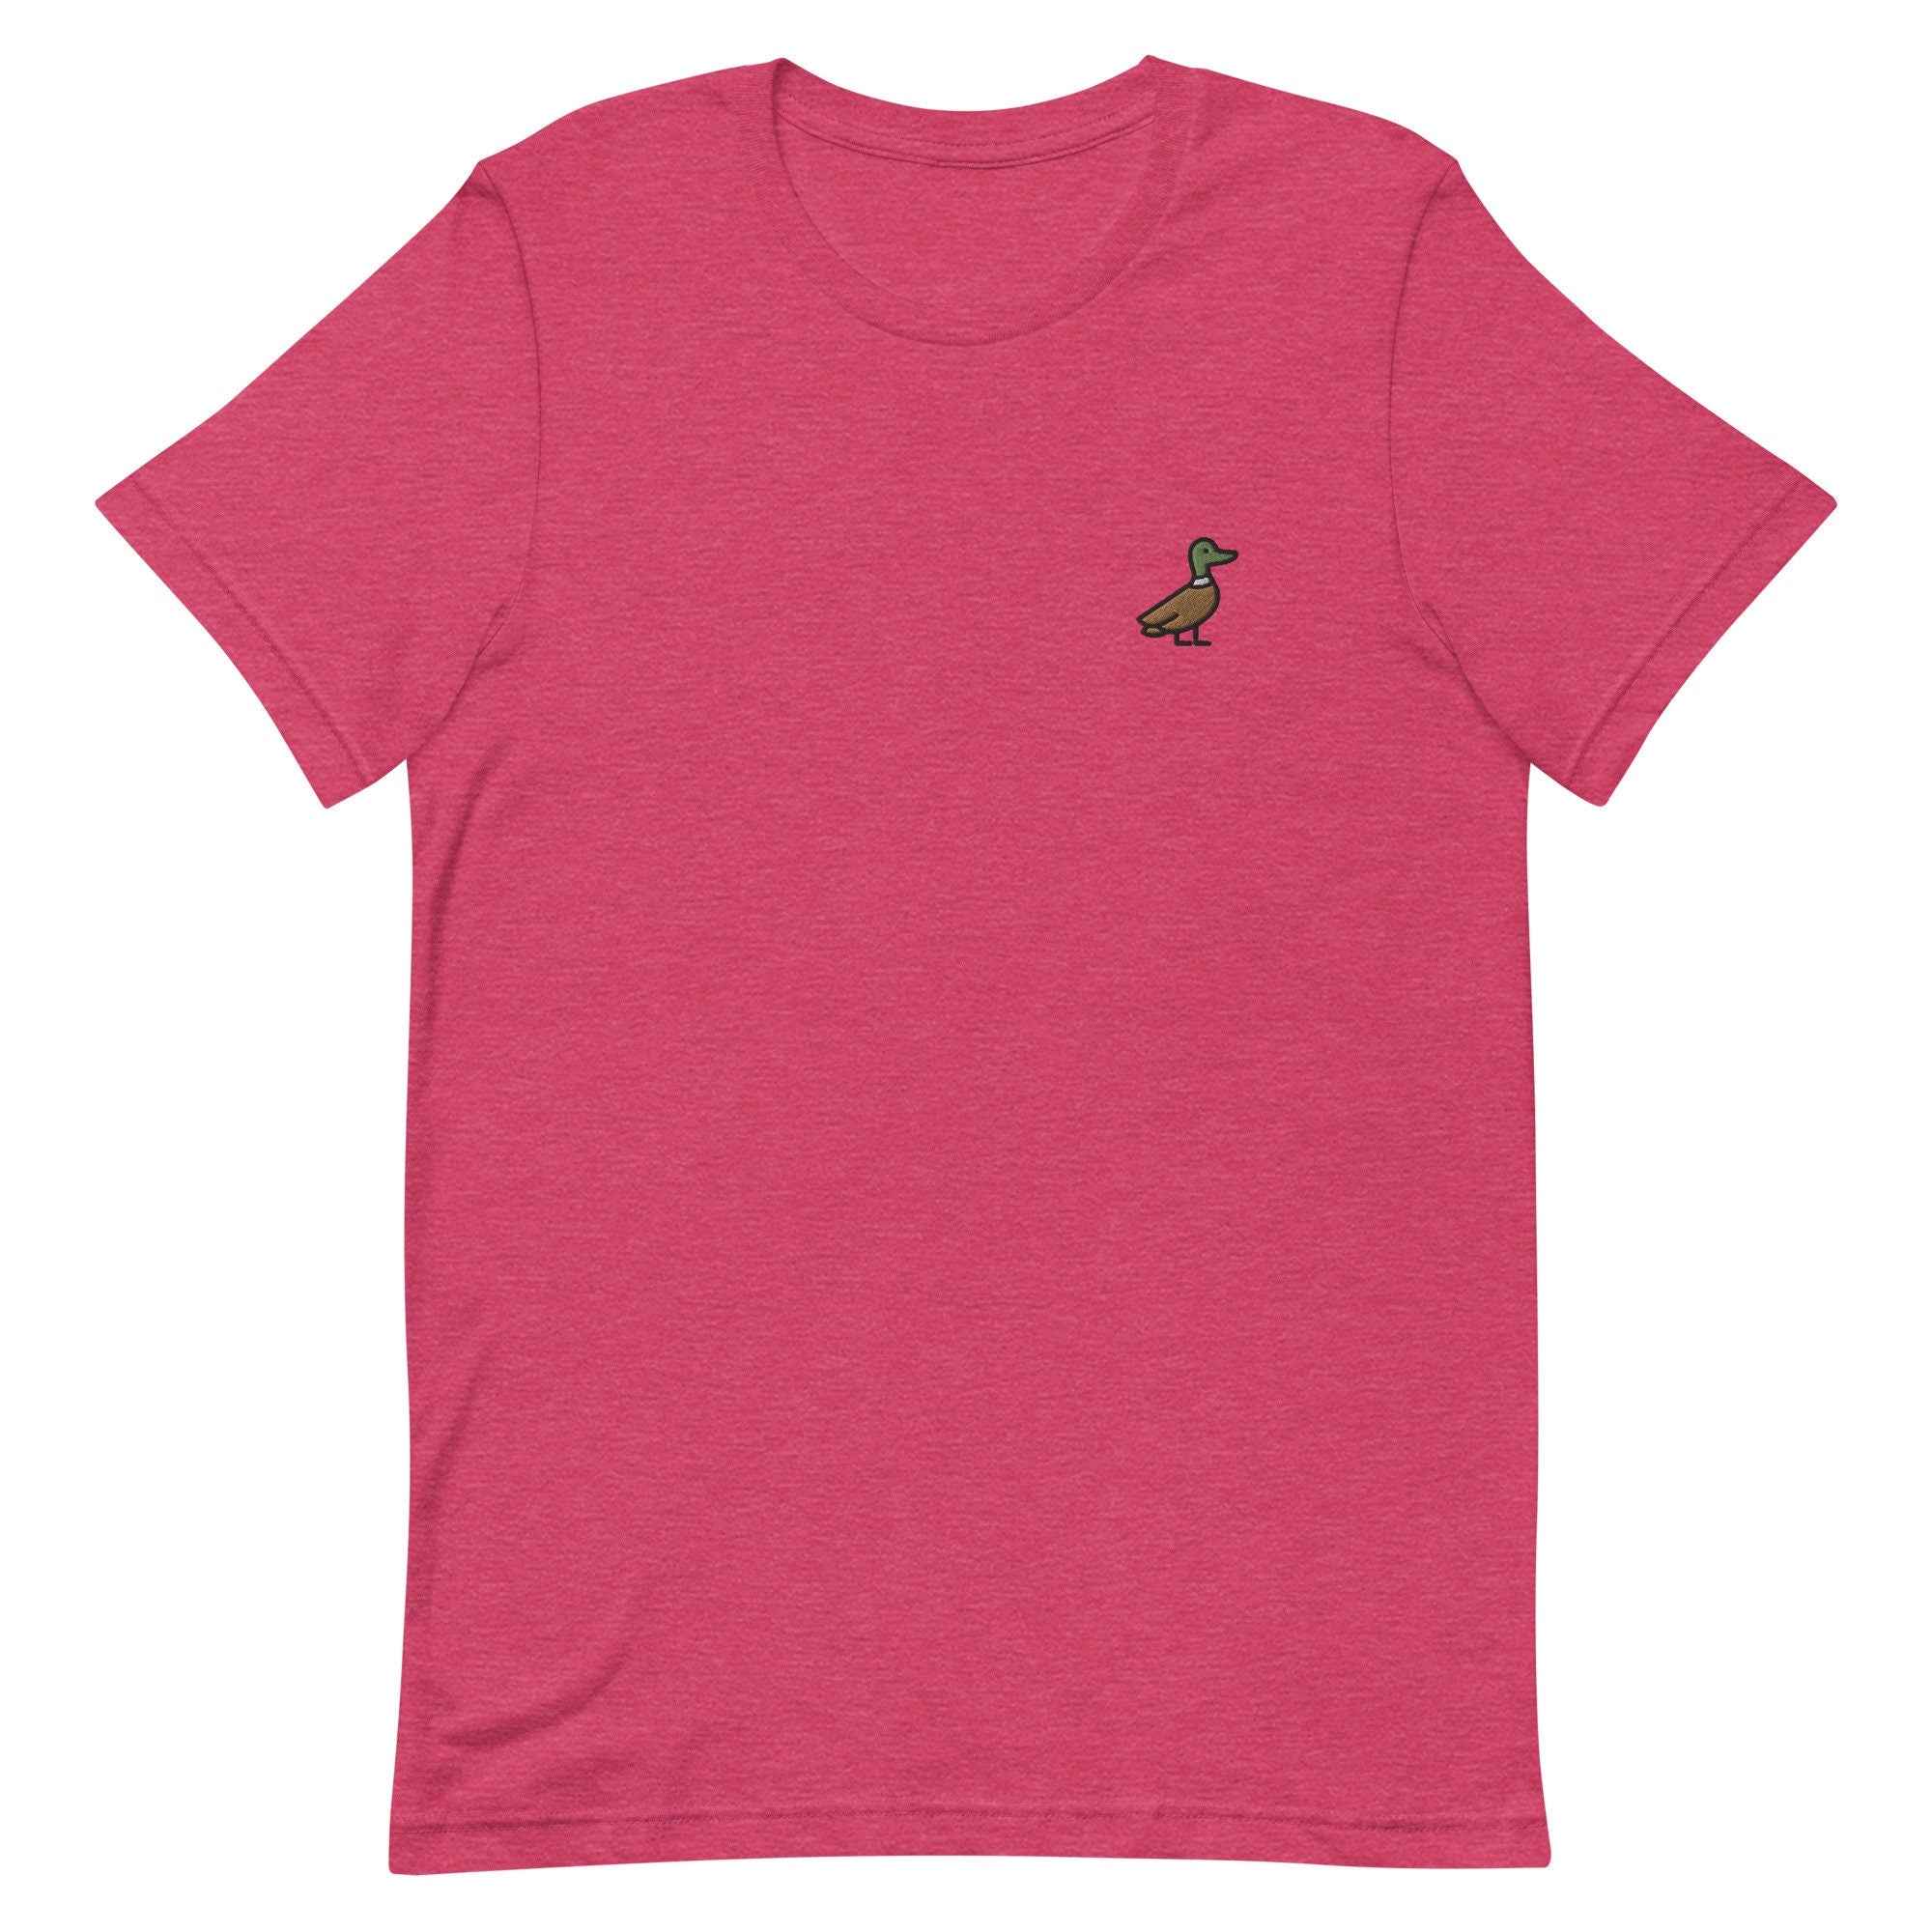 Duck Premium Men's T-Shirt, Embroidered Men's T-Shirt Gift for Boyfriend, Men's Short Sleeve Shirt - Multiple Colors